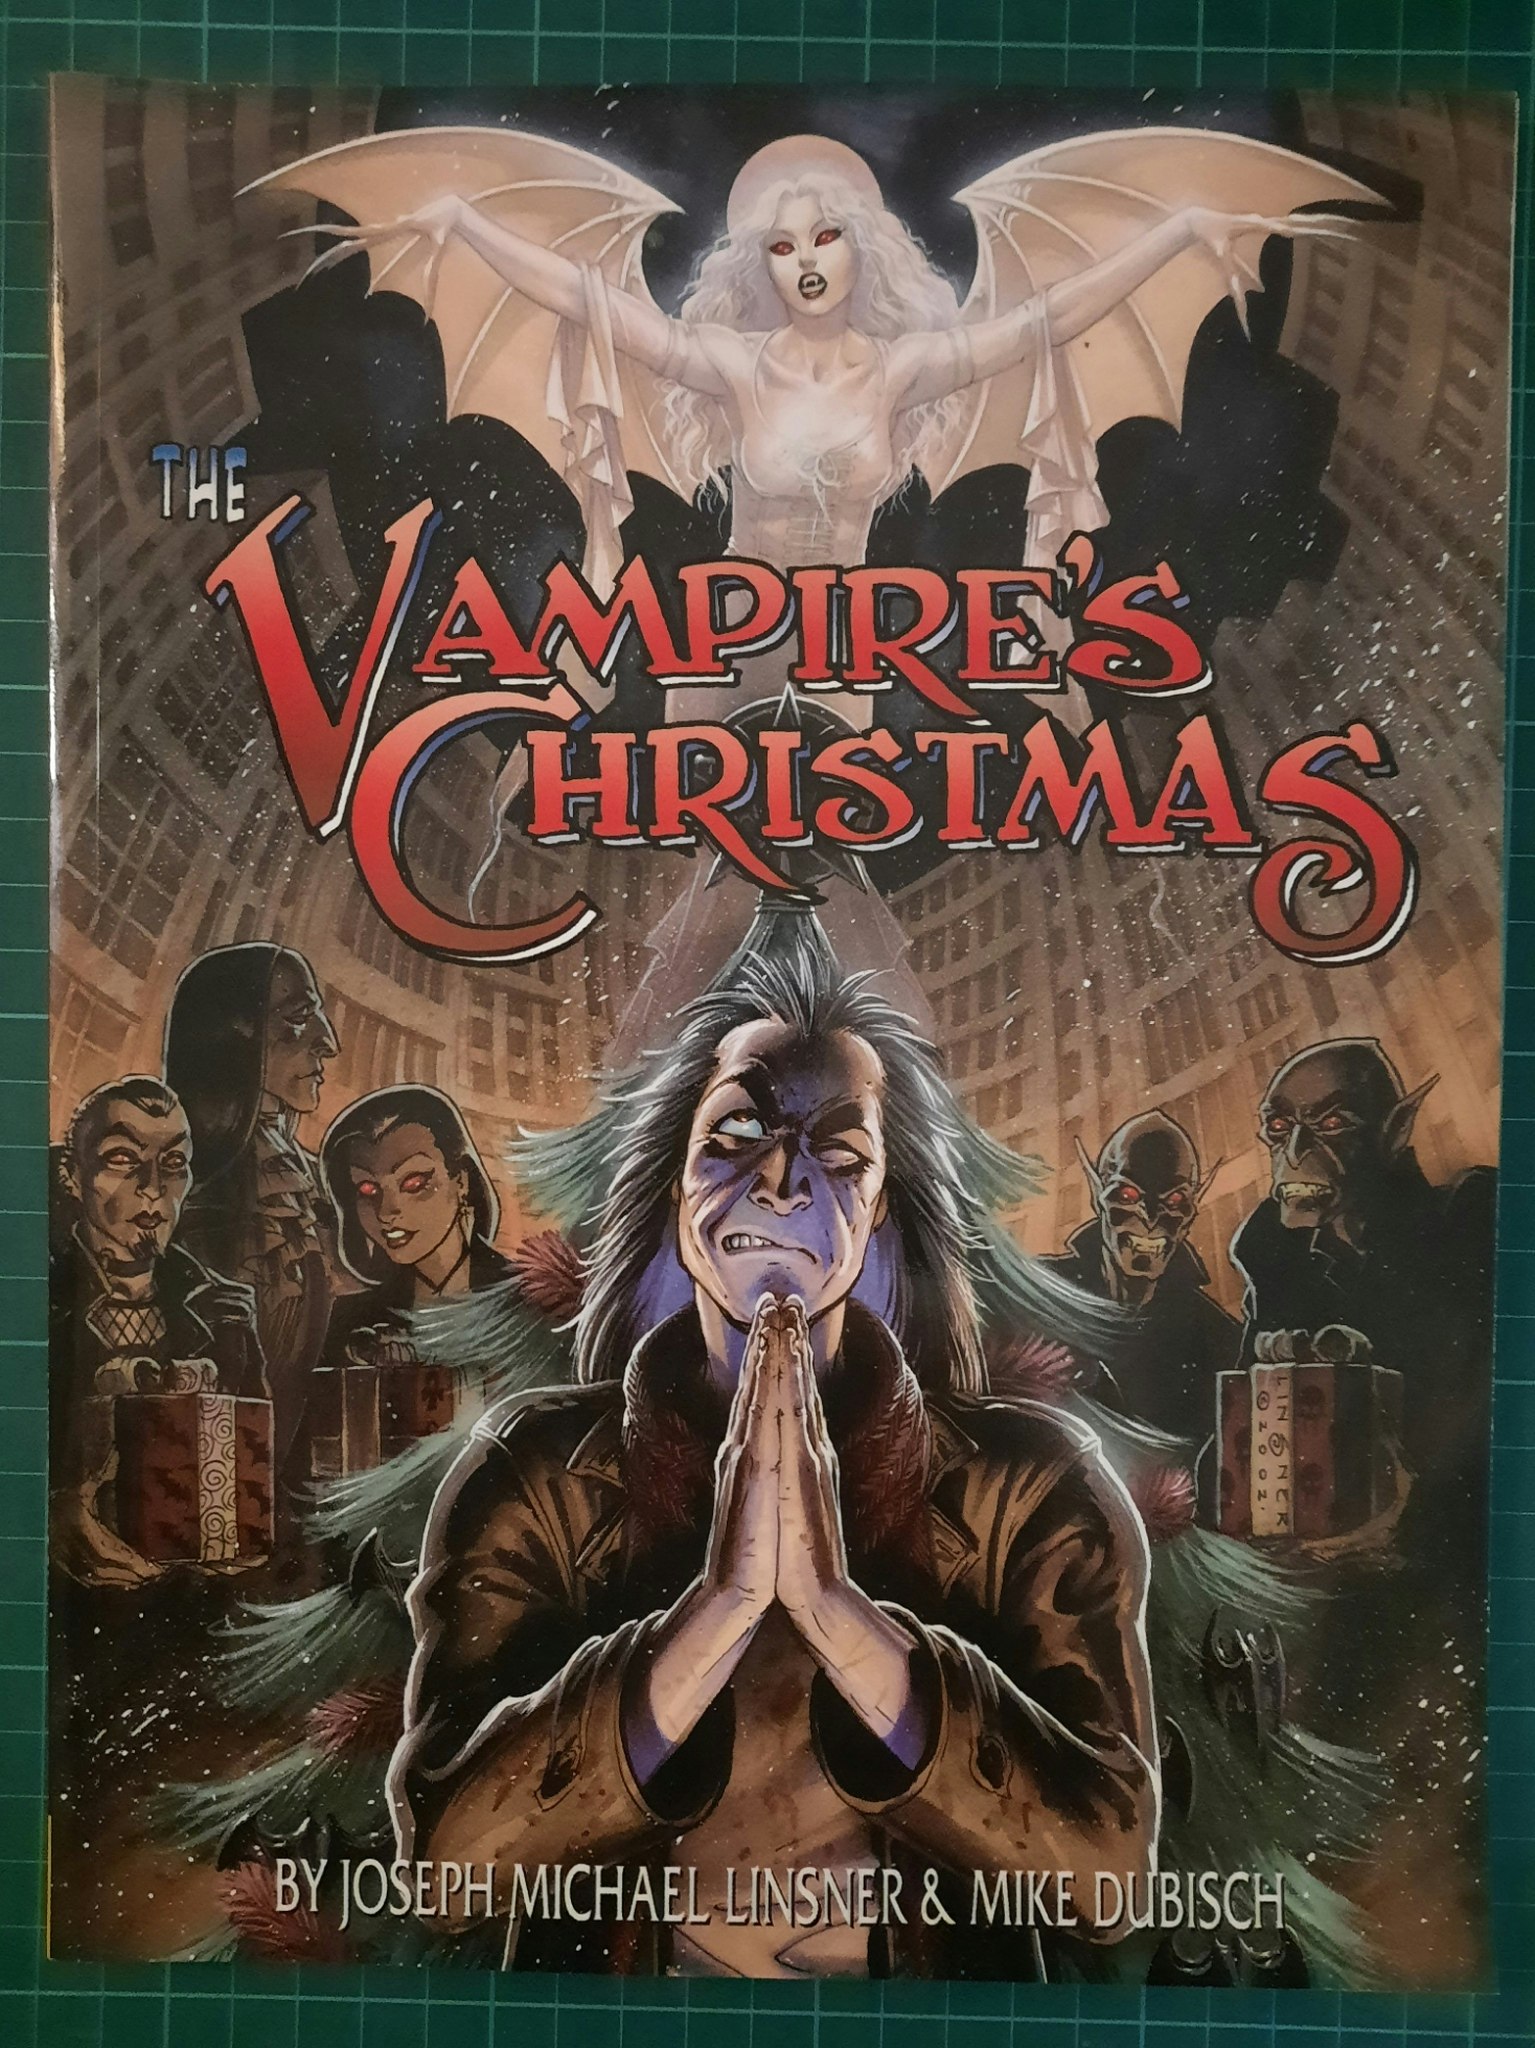 The vampire's christmas